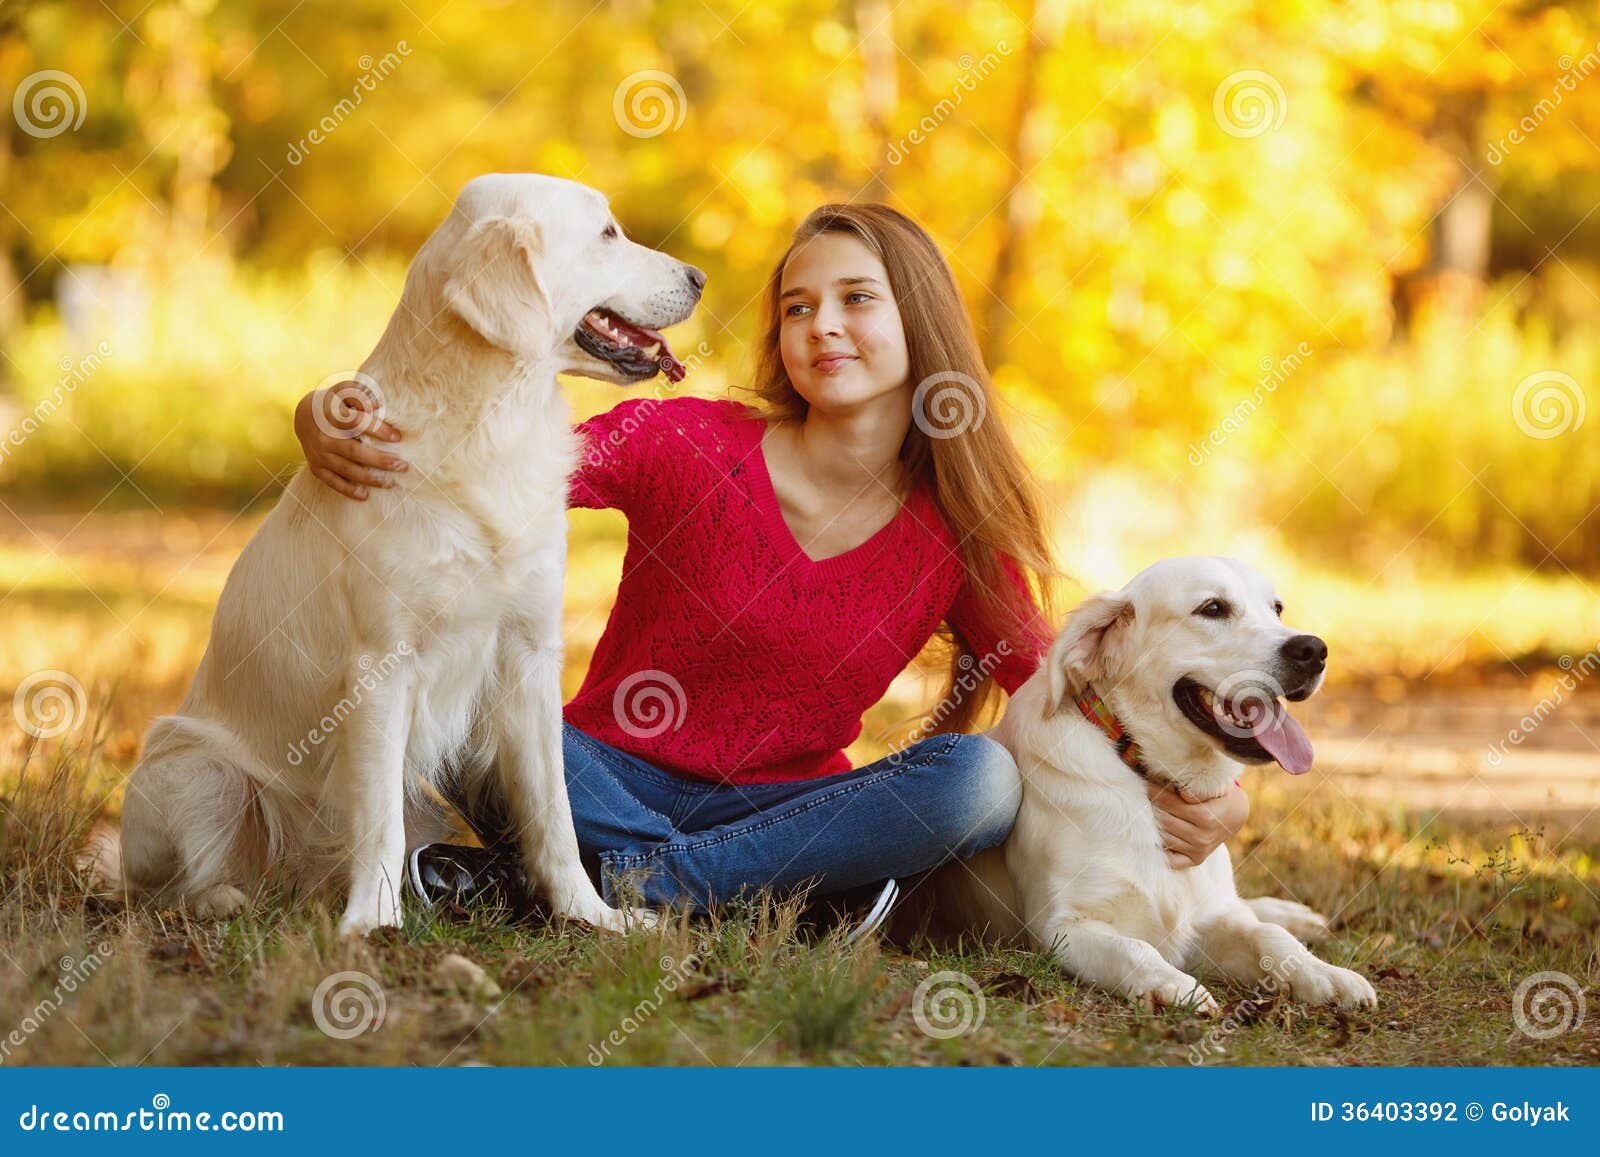 Girl two dog. Золотистый ретривер девочка. Золотистый ретривер с девушкой. Labrador Retriever гуляет. Красивая девушка гуляет с лабрадором картинка.